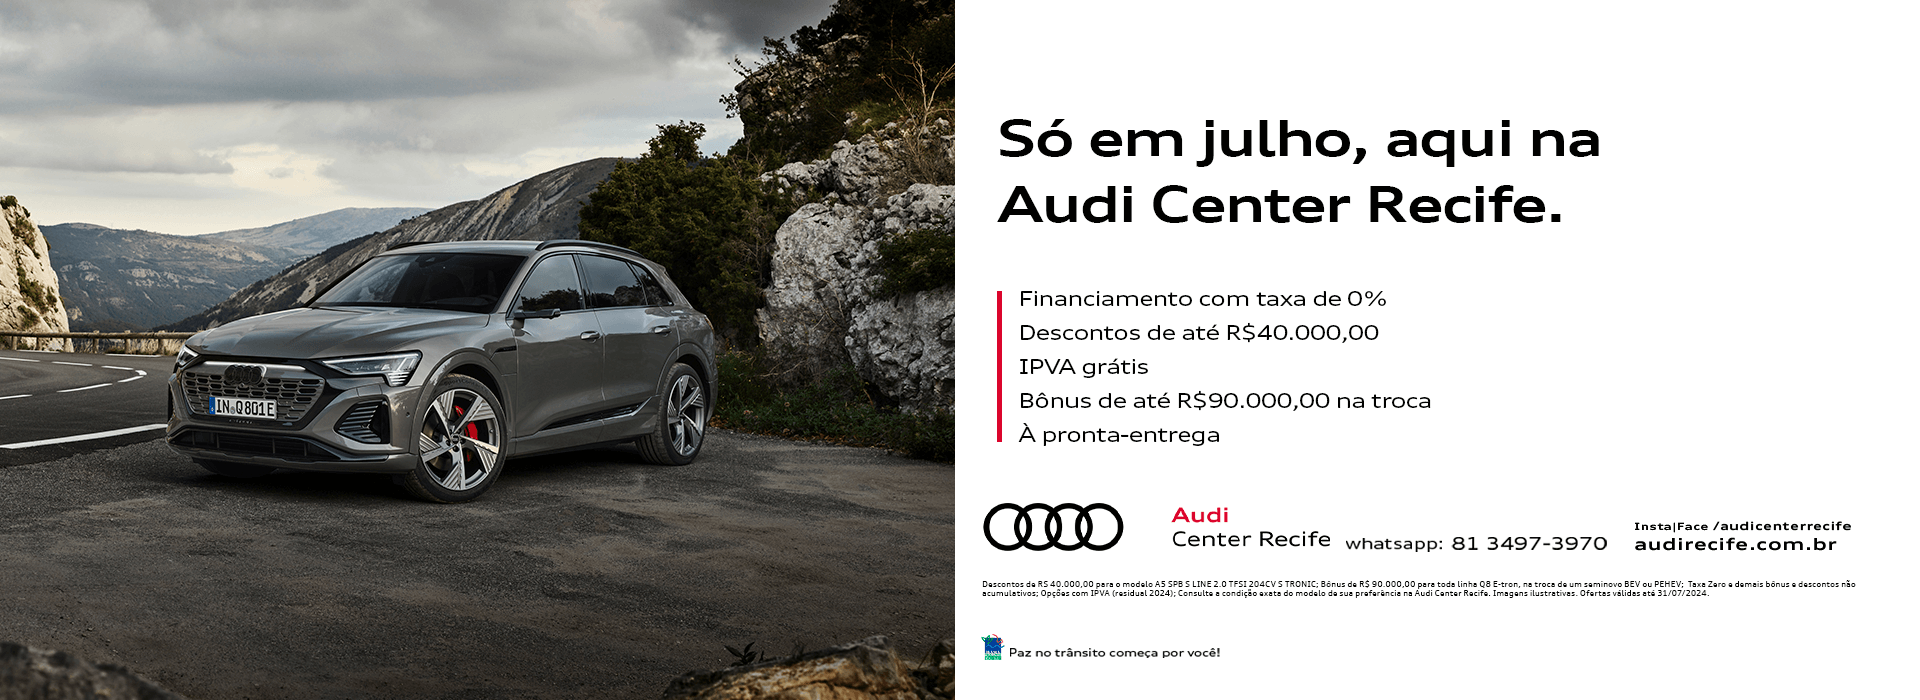 Só em julho na Audi Center Recife 